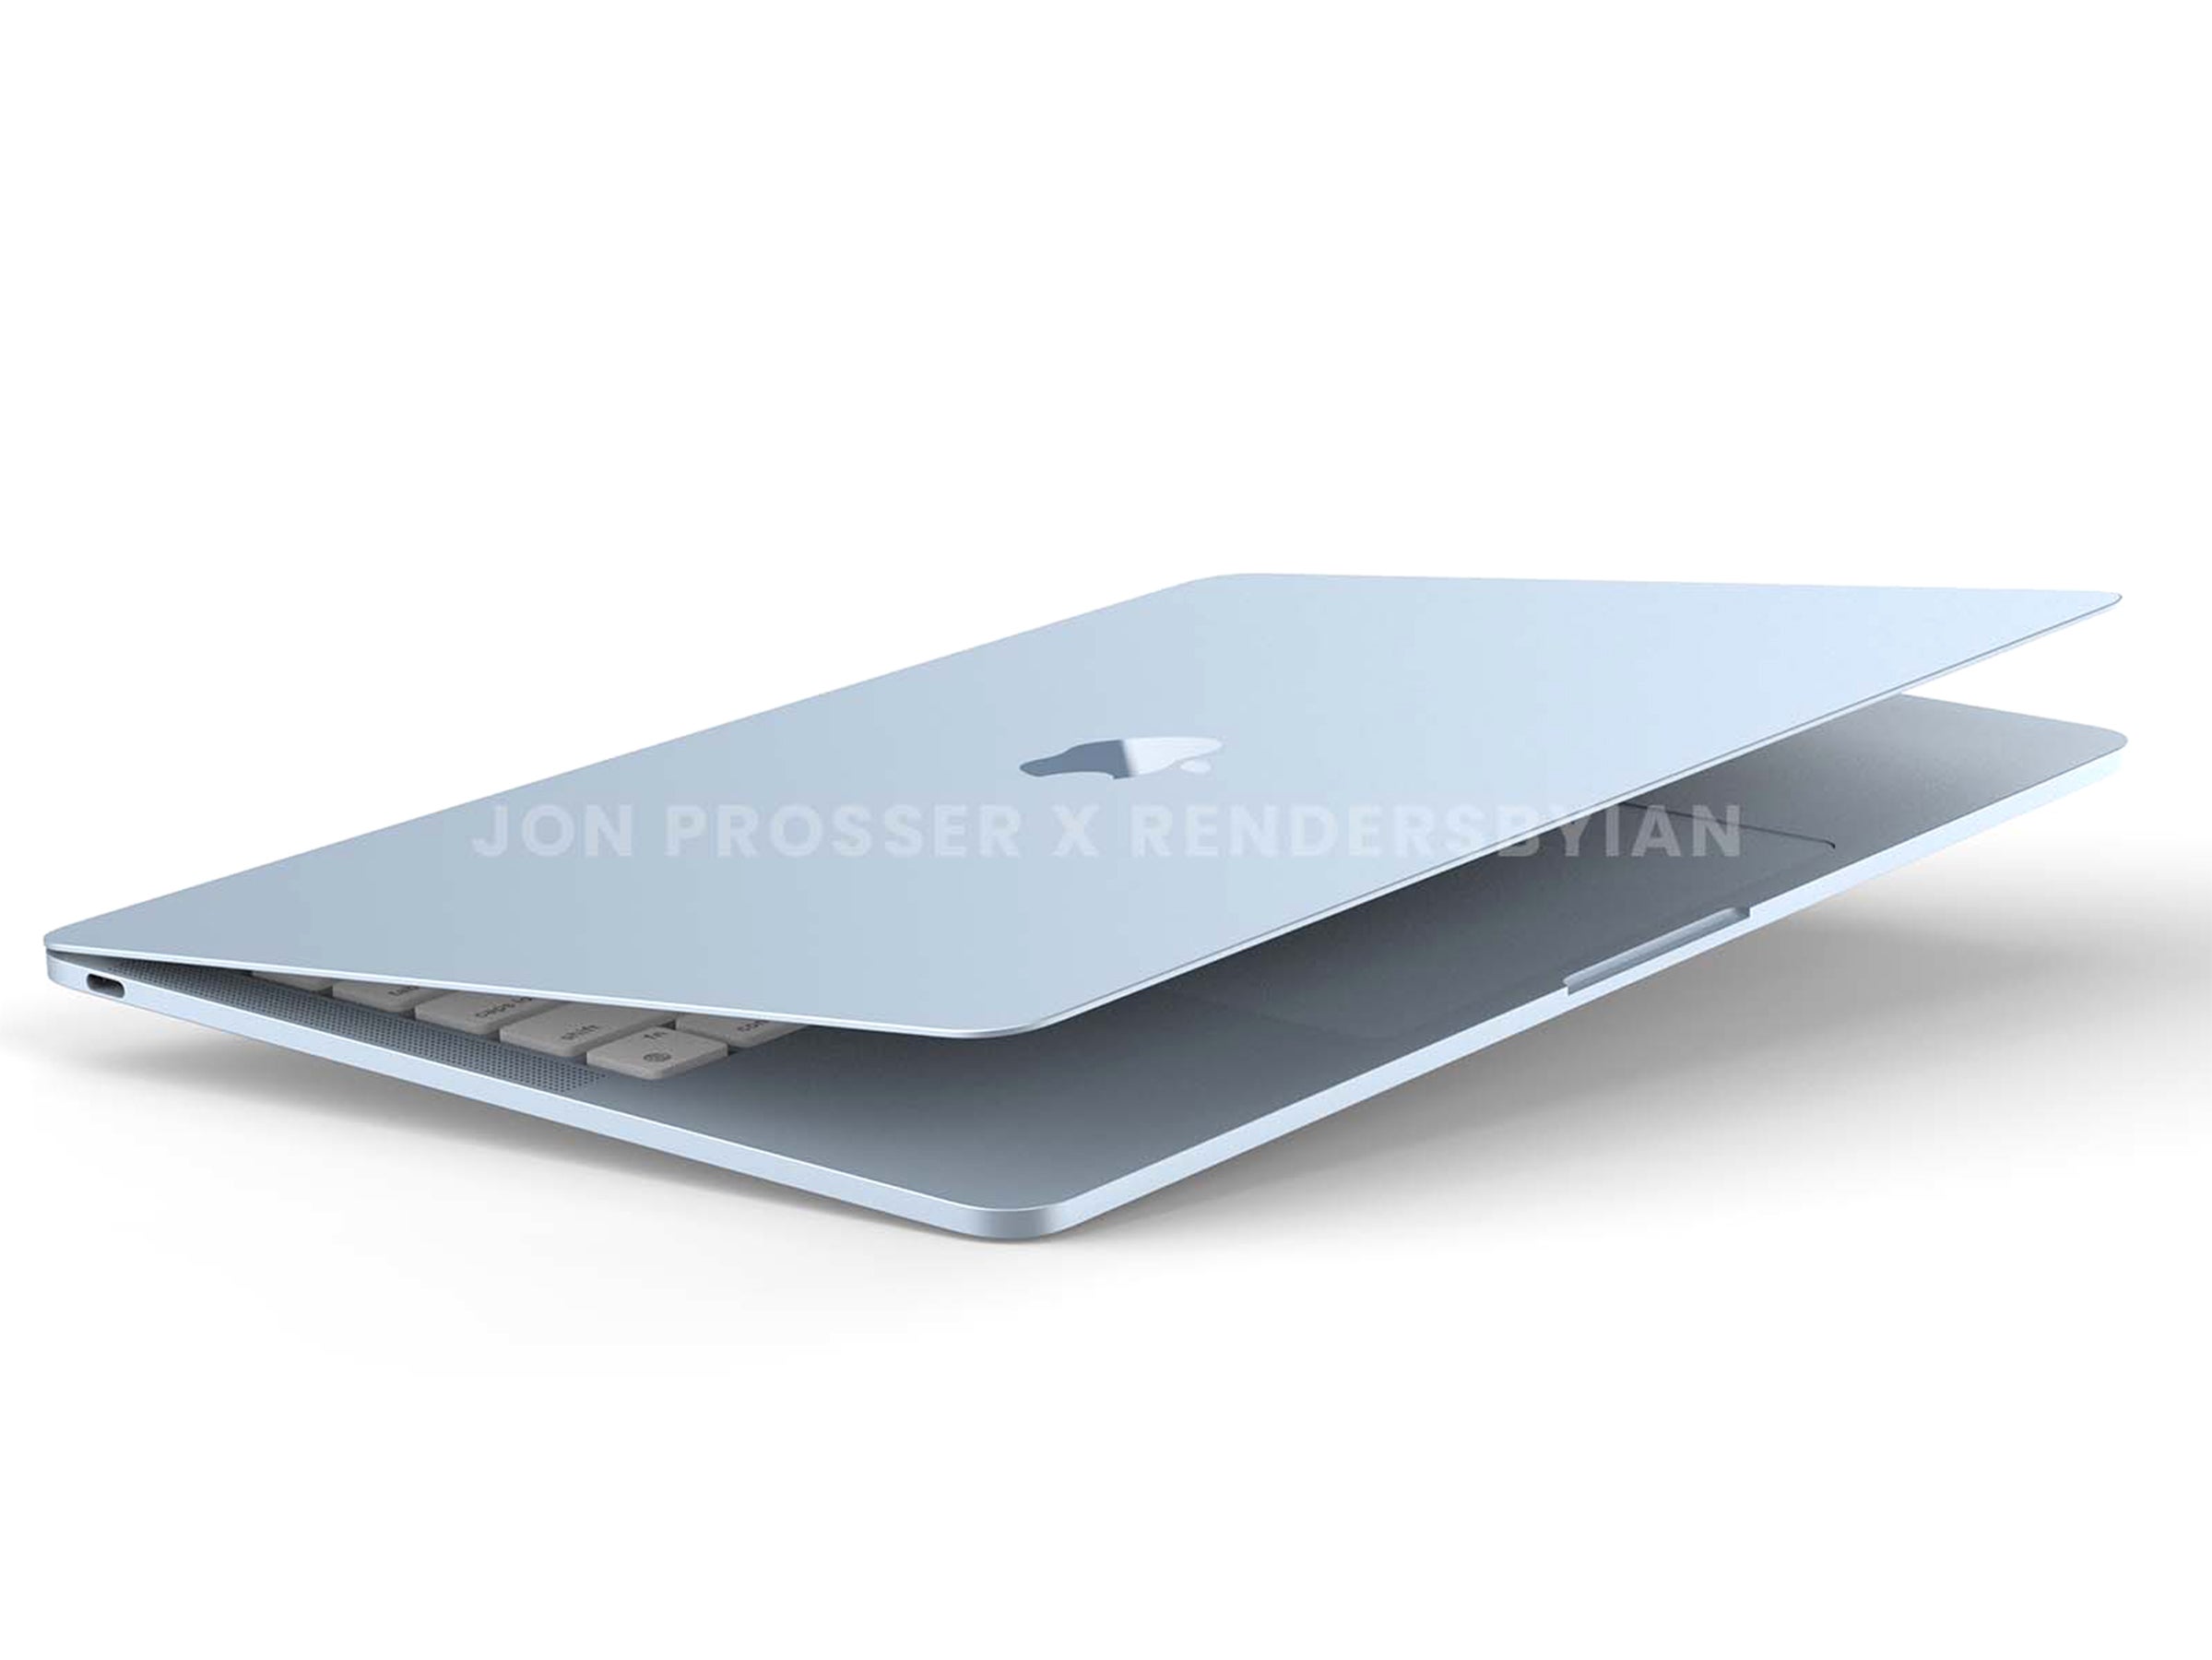 #MacBook Air: Diese Details wollte Apple noch geheim halten